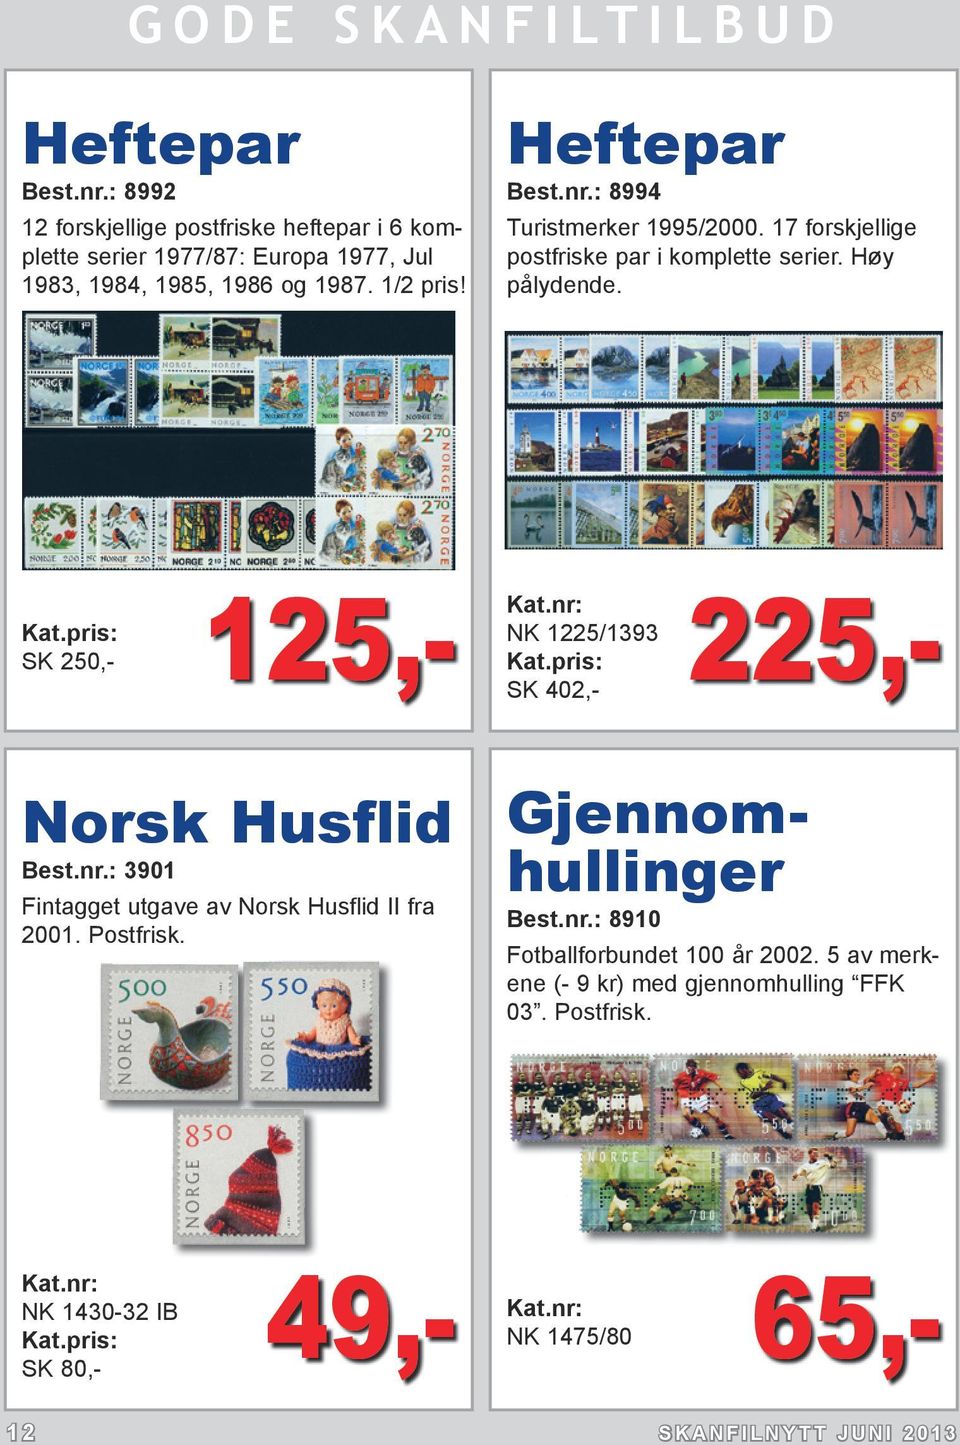 125,- NK 1225/1393 SK 402,- SK 250,- 225,- Norsk Husflid Best.nr.: 3901 Fintagget utgave av Norsk Husflid II fra 2001. Postfrisk.